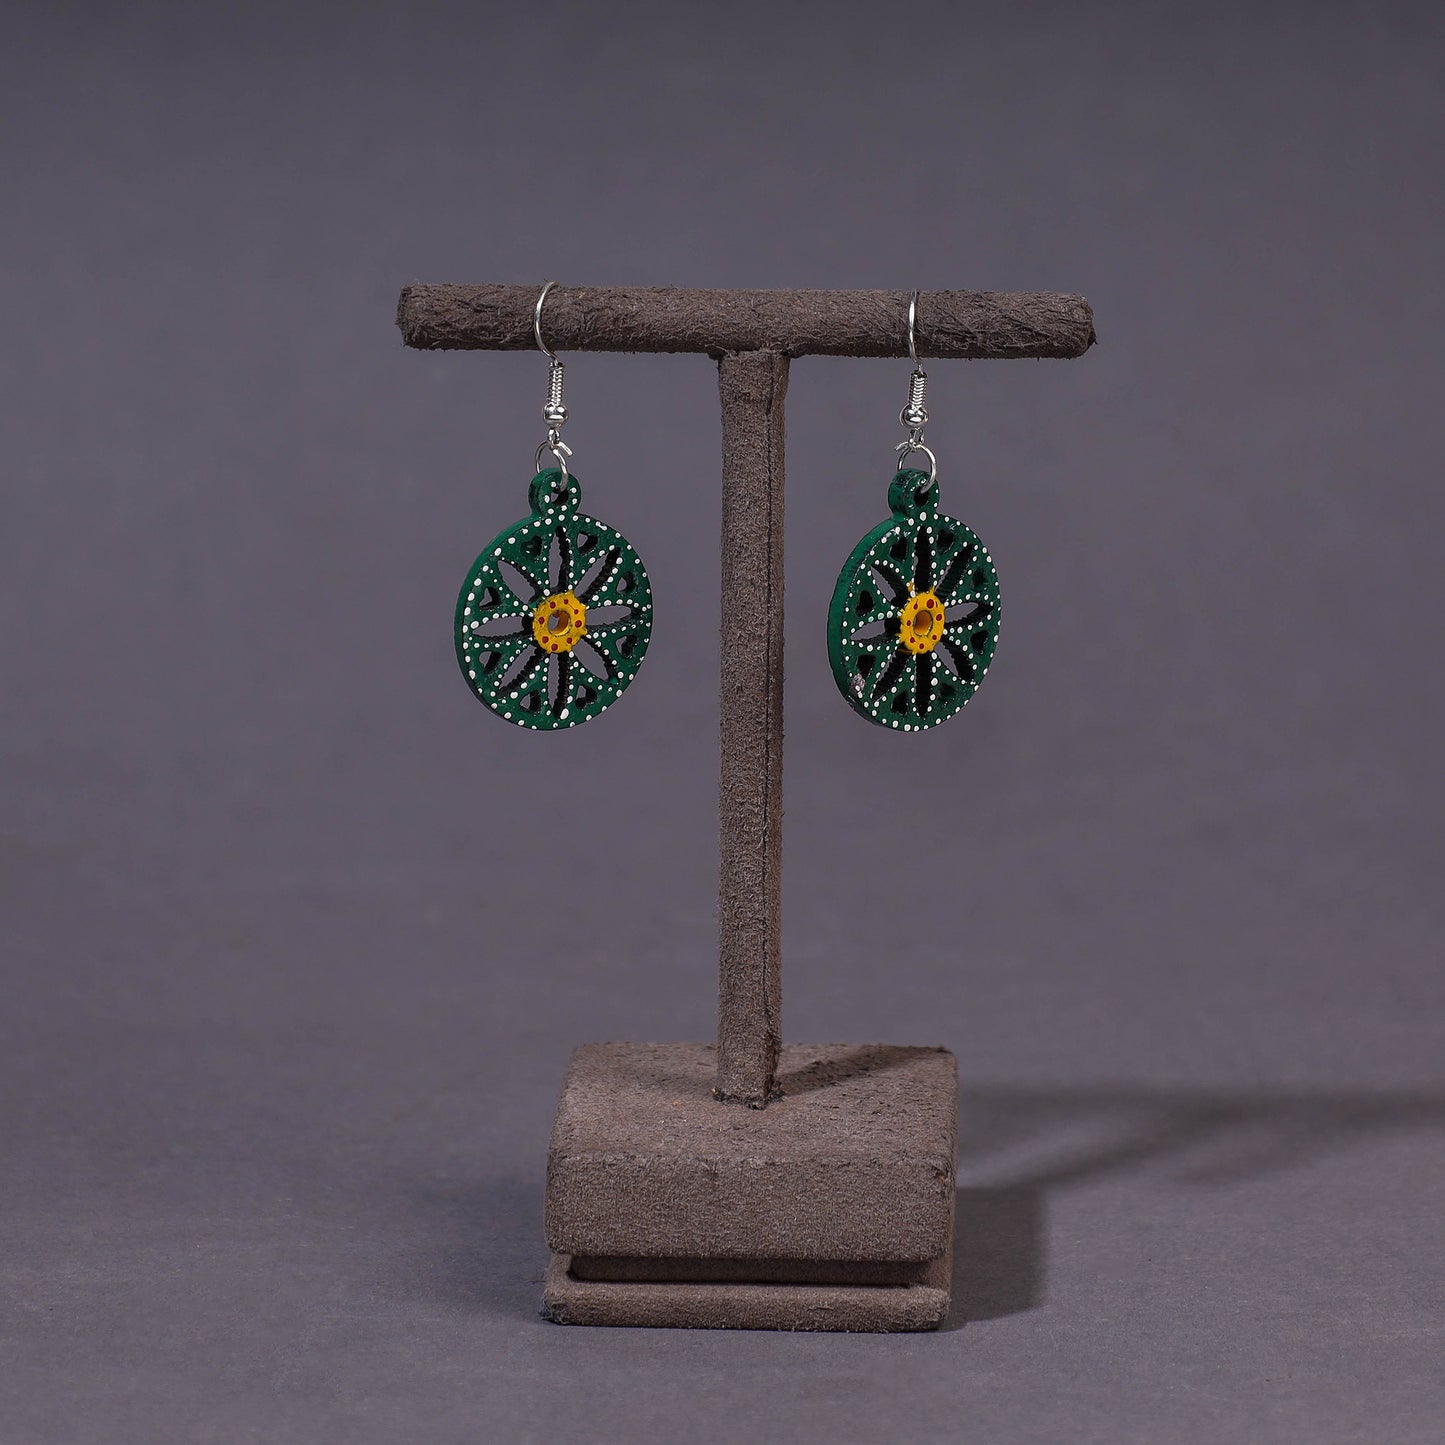 handpainted wooden earrings